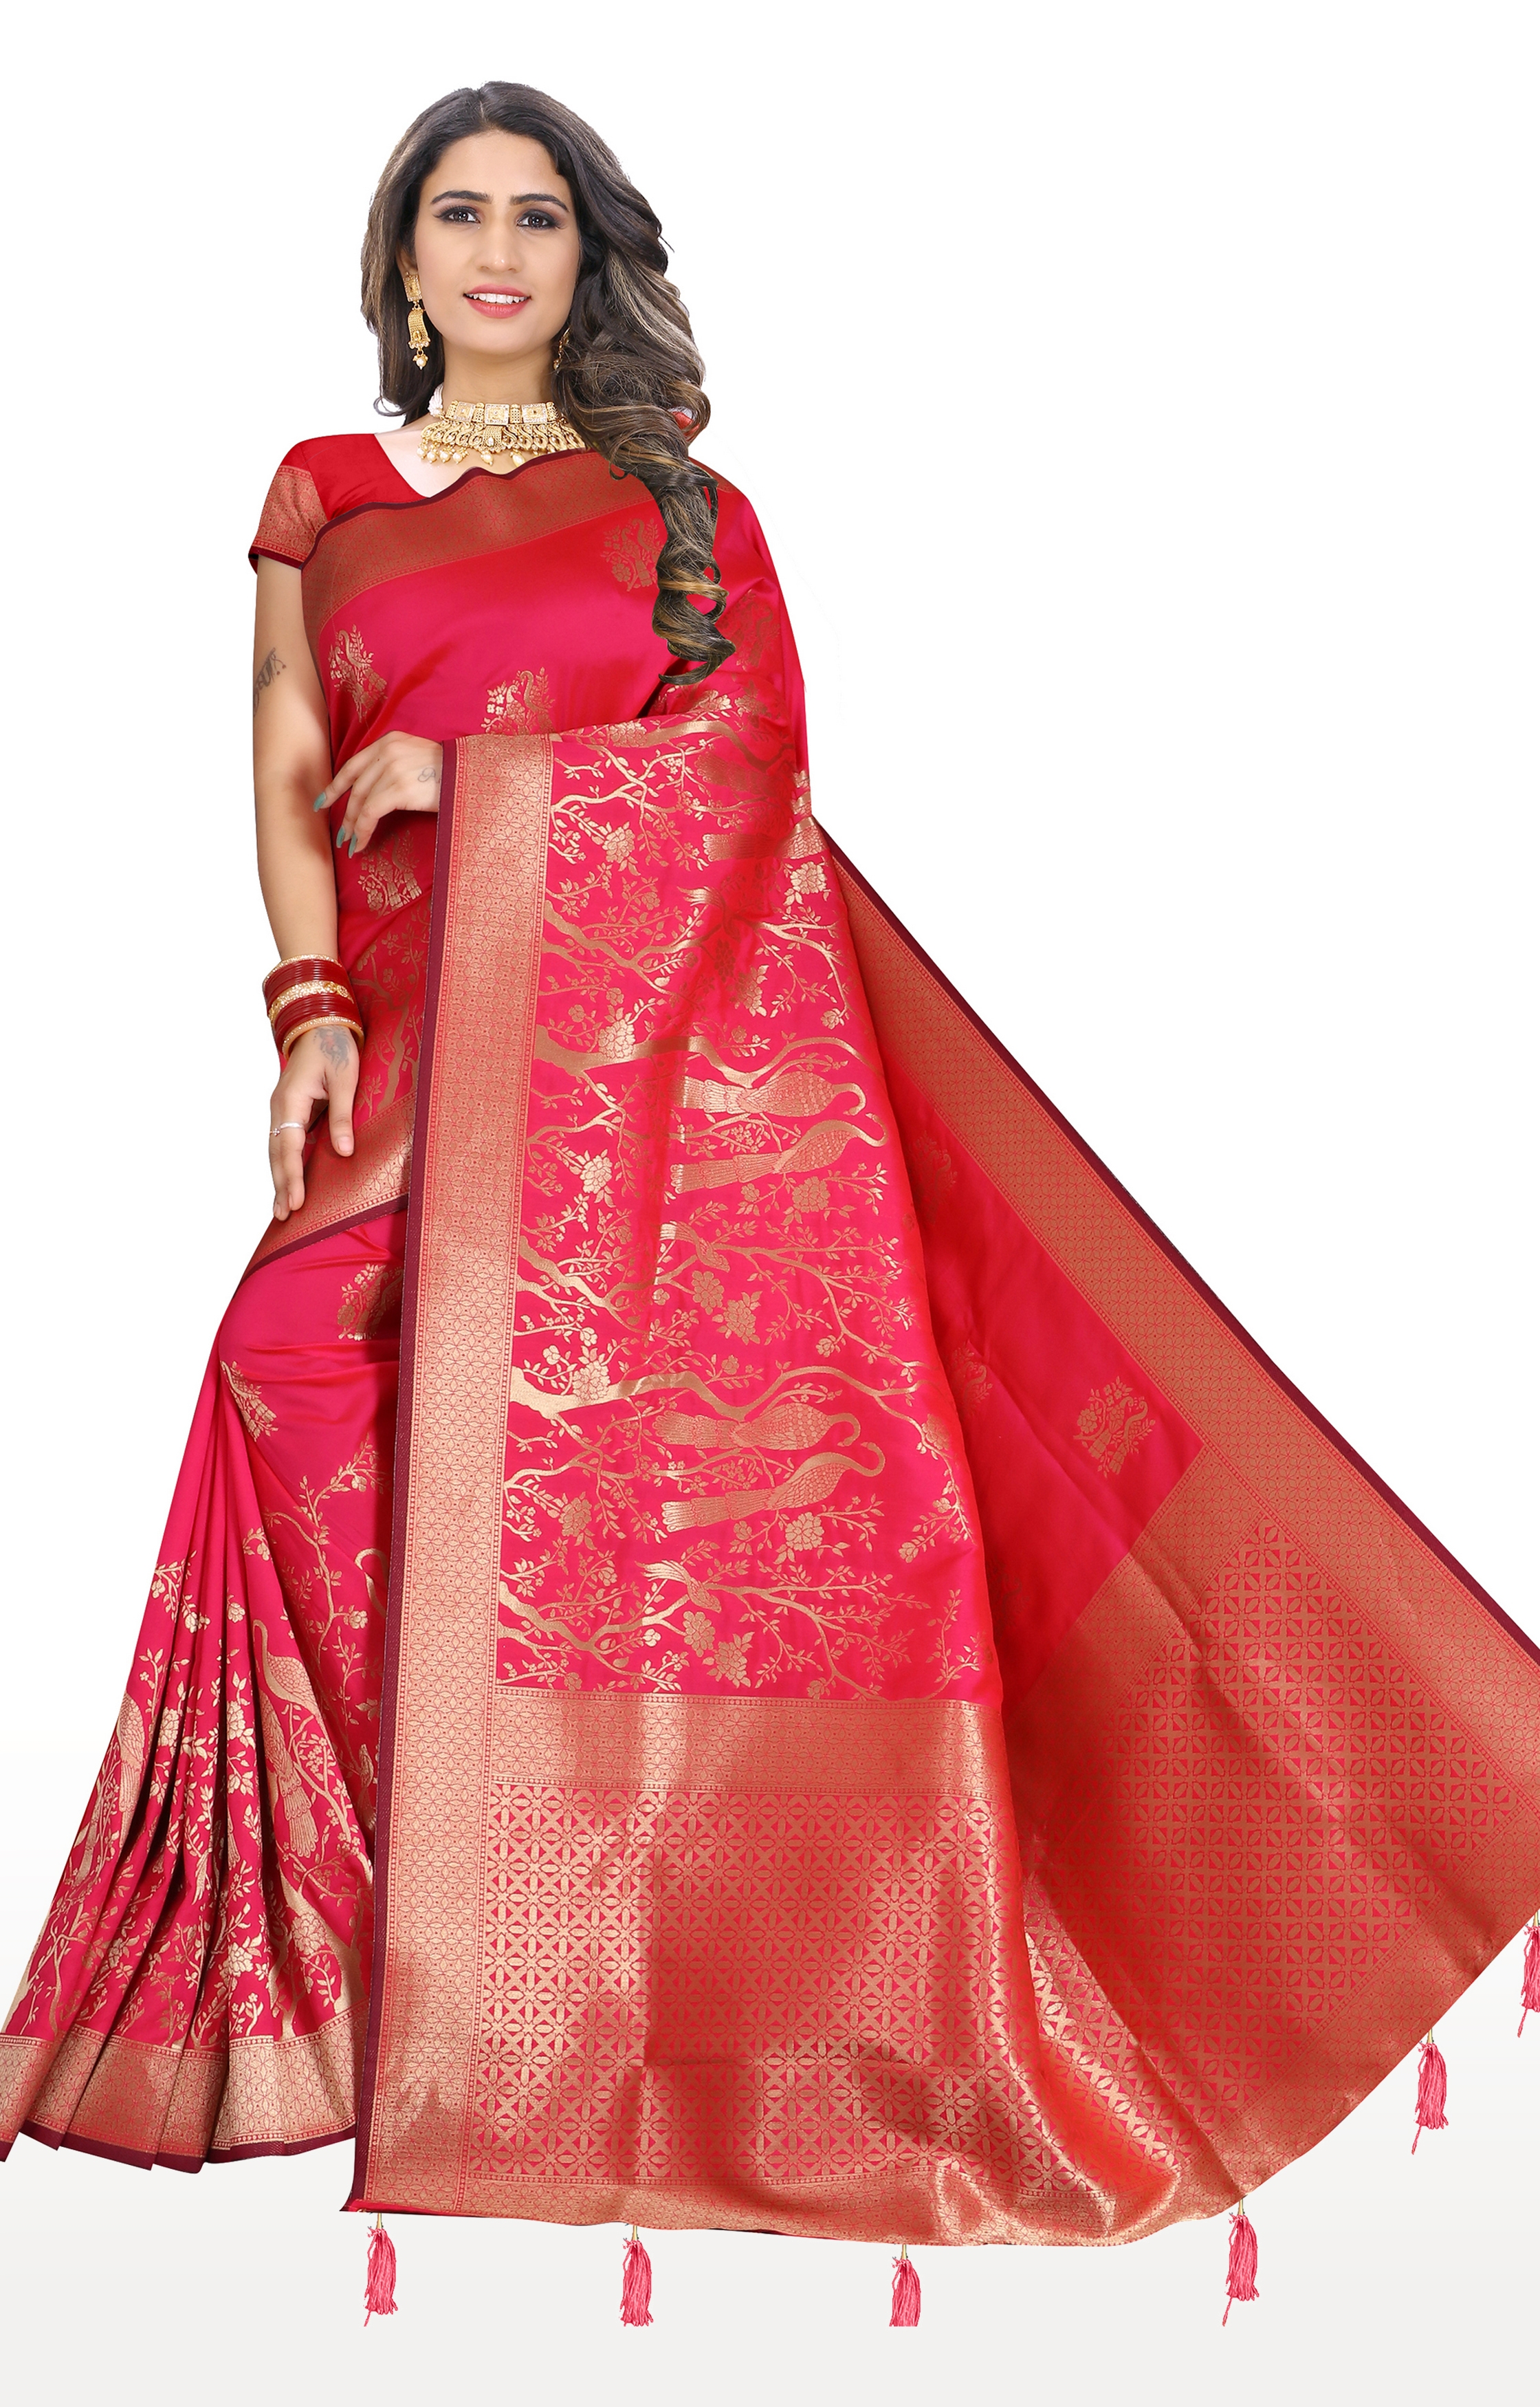 Glemora | Glemora Saree for Women Banarasi Silk Saree With Blouse (Light Pink)